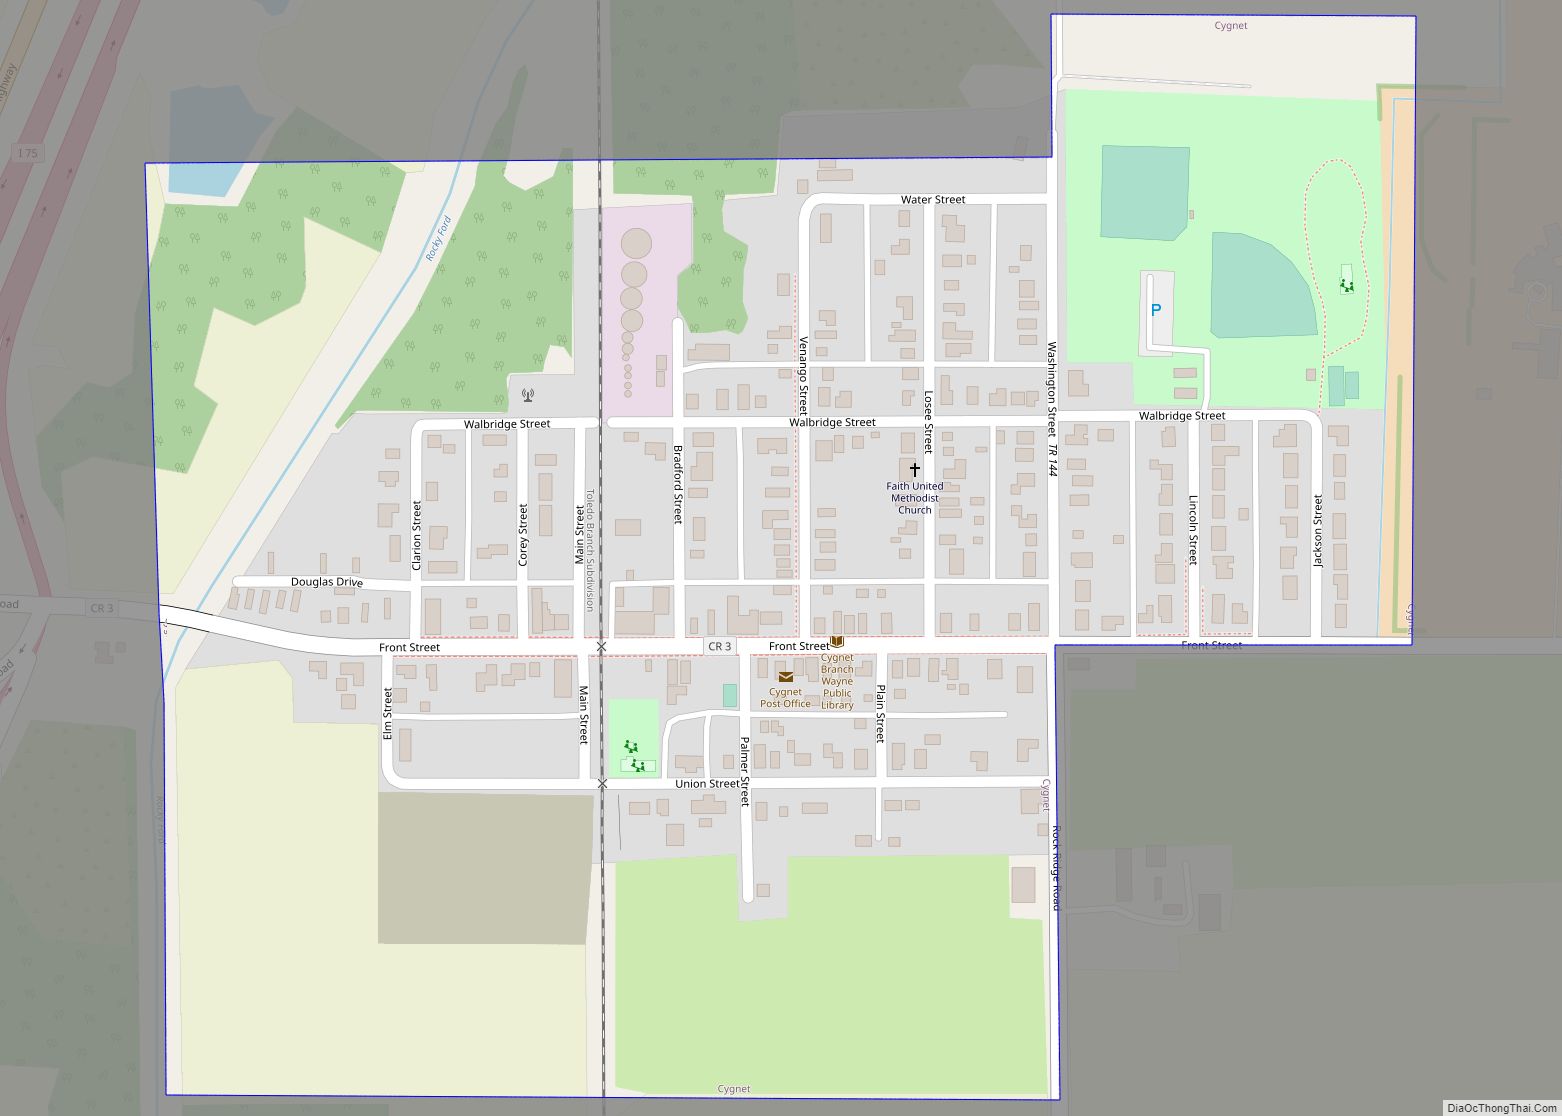 Map of Cygnet village